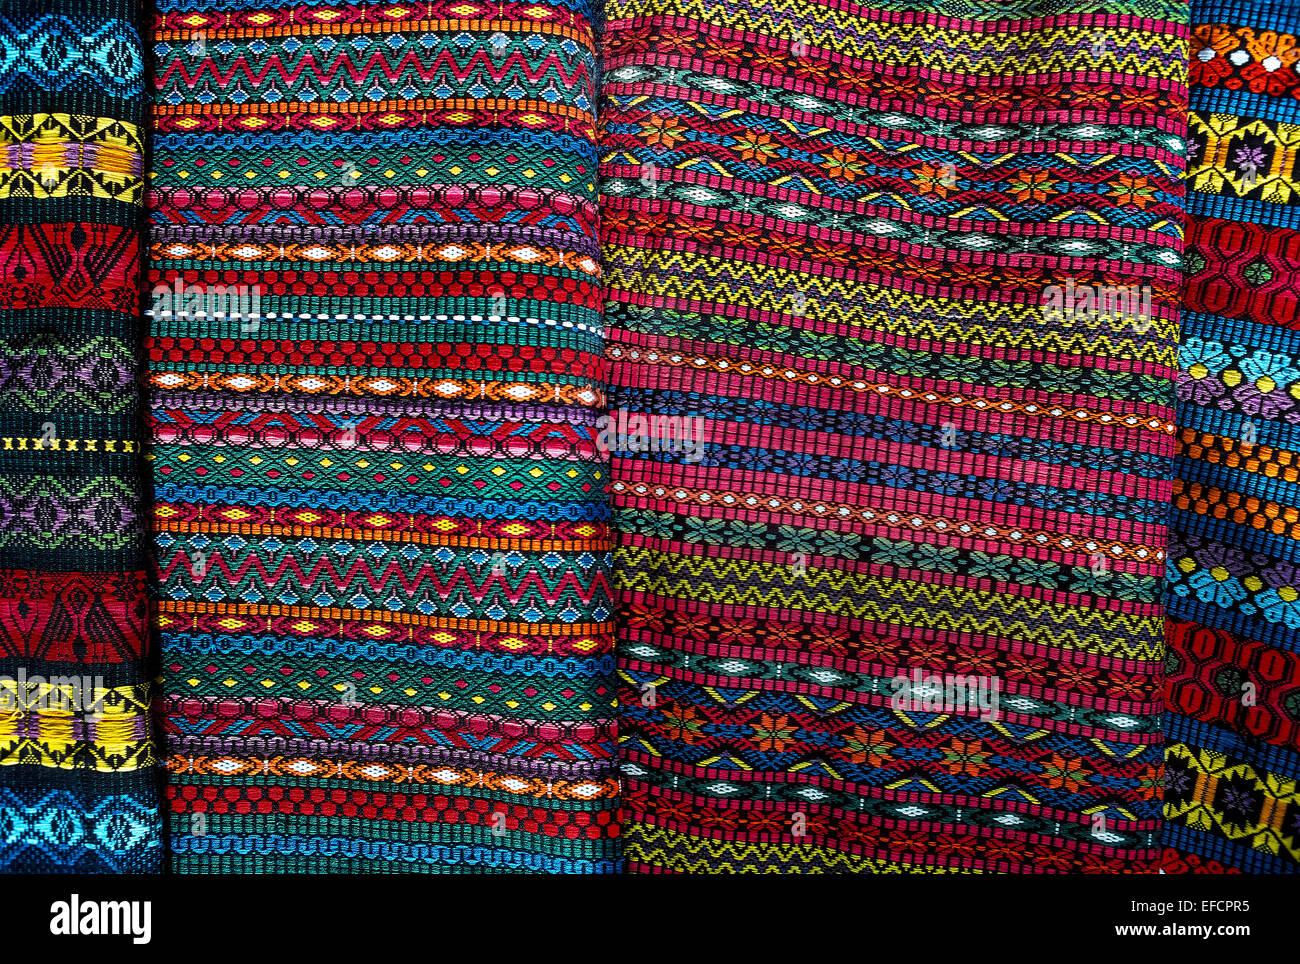 Schöne Farben und komplizierte geometrische Designs identifizieren die handgewebte Stoffe von Maya-Frauen im Hochland von Guatemala. Stockfoto